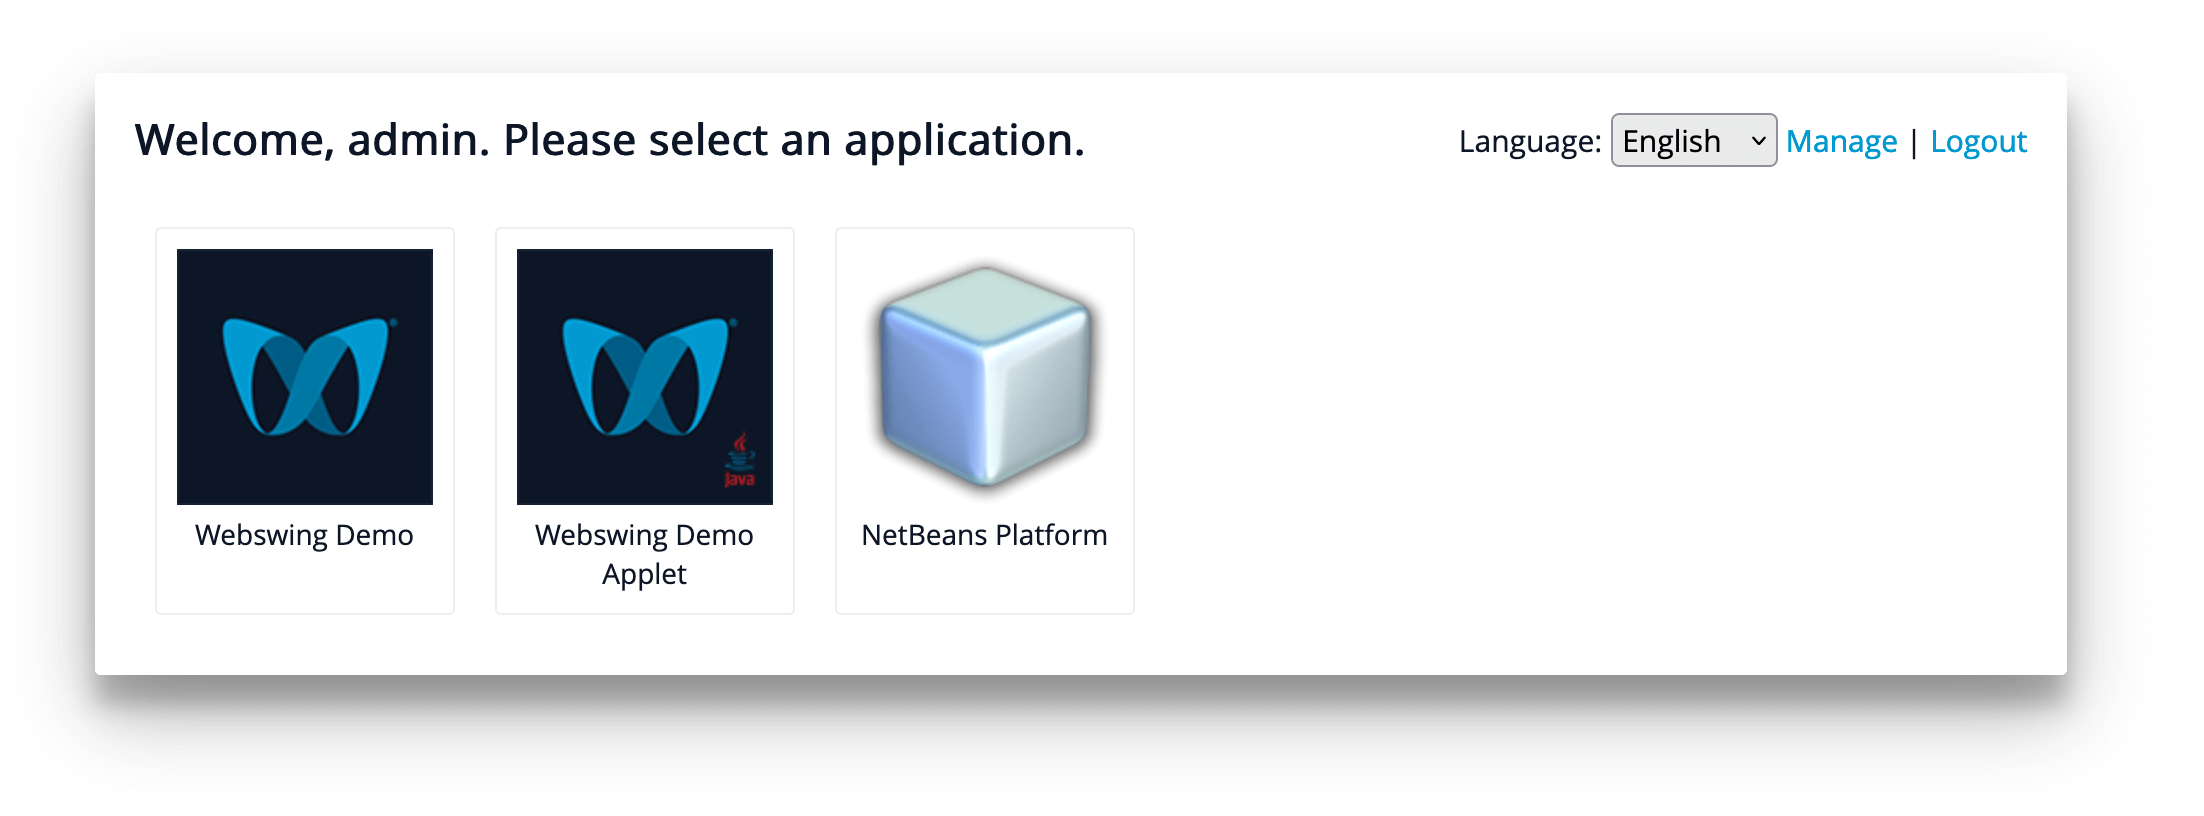 application selector screen